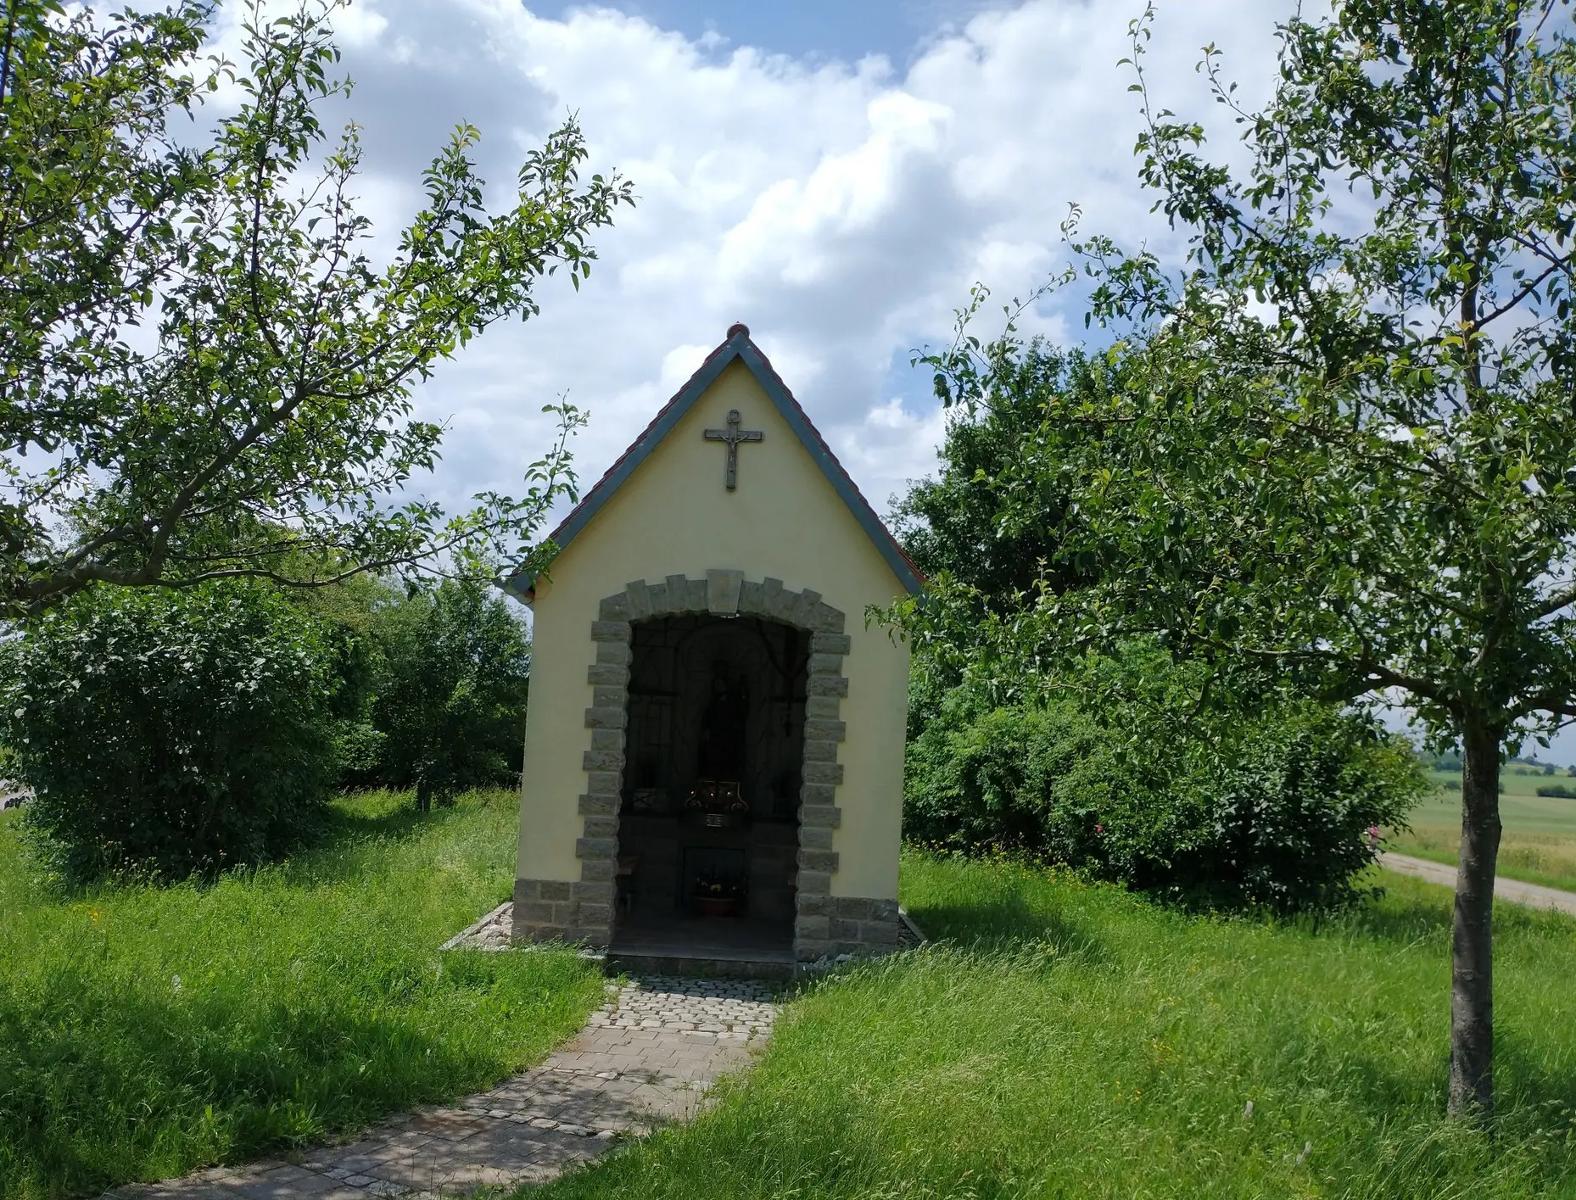 Die kleine Kapelle wurde im Jahr 2008 von den Wallfahrern errichtet und beherbergt eine Statue des St. Salvator.